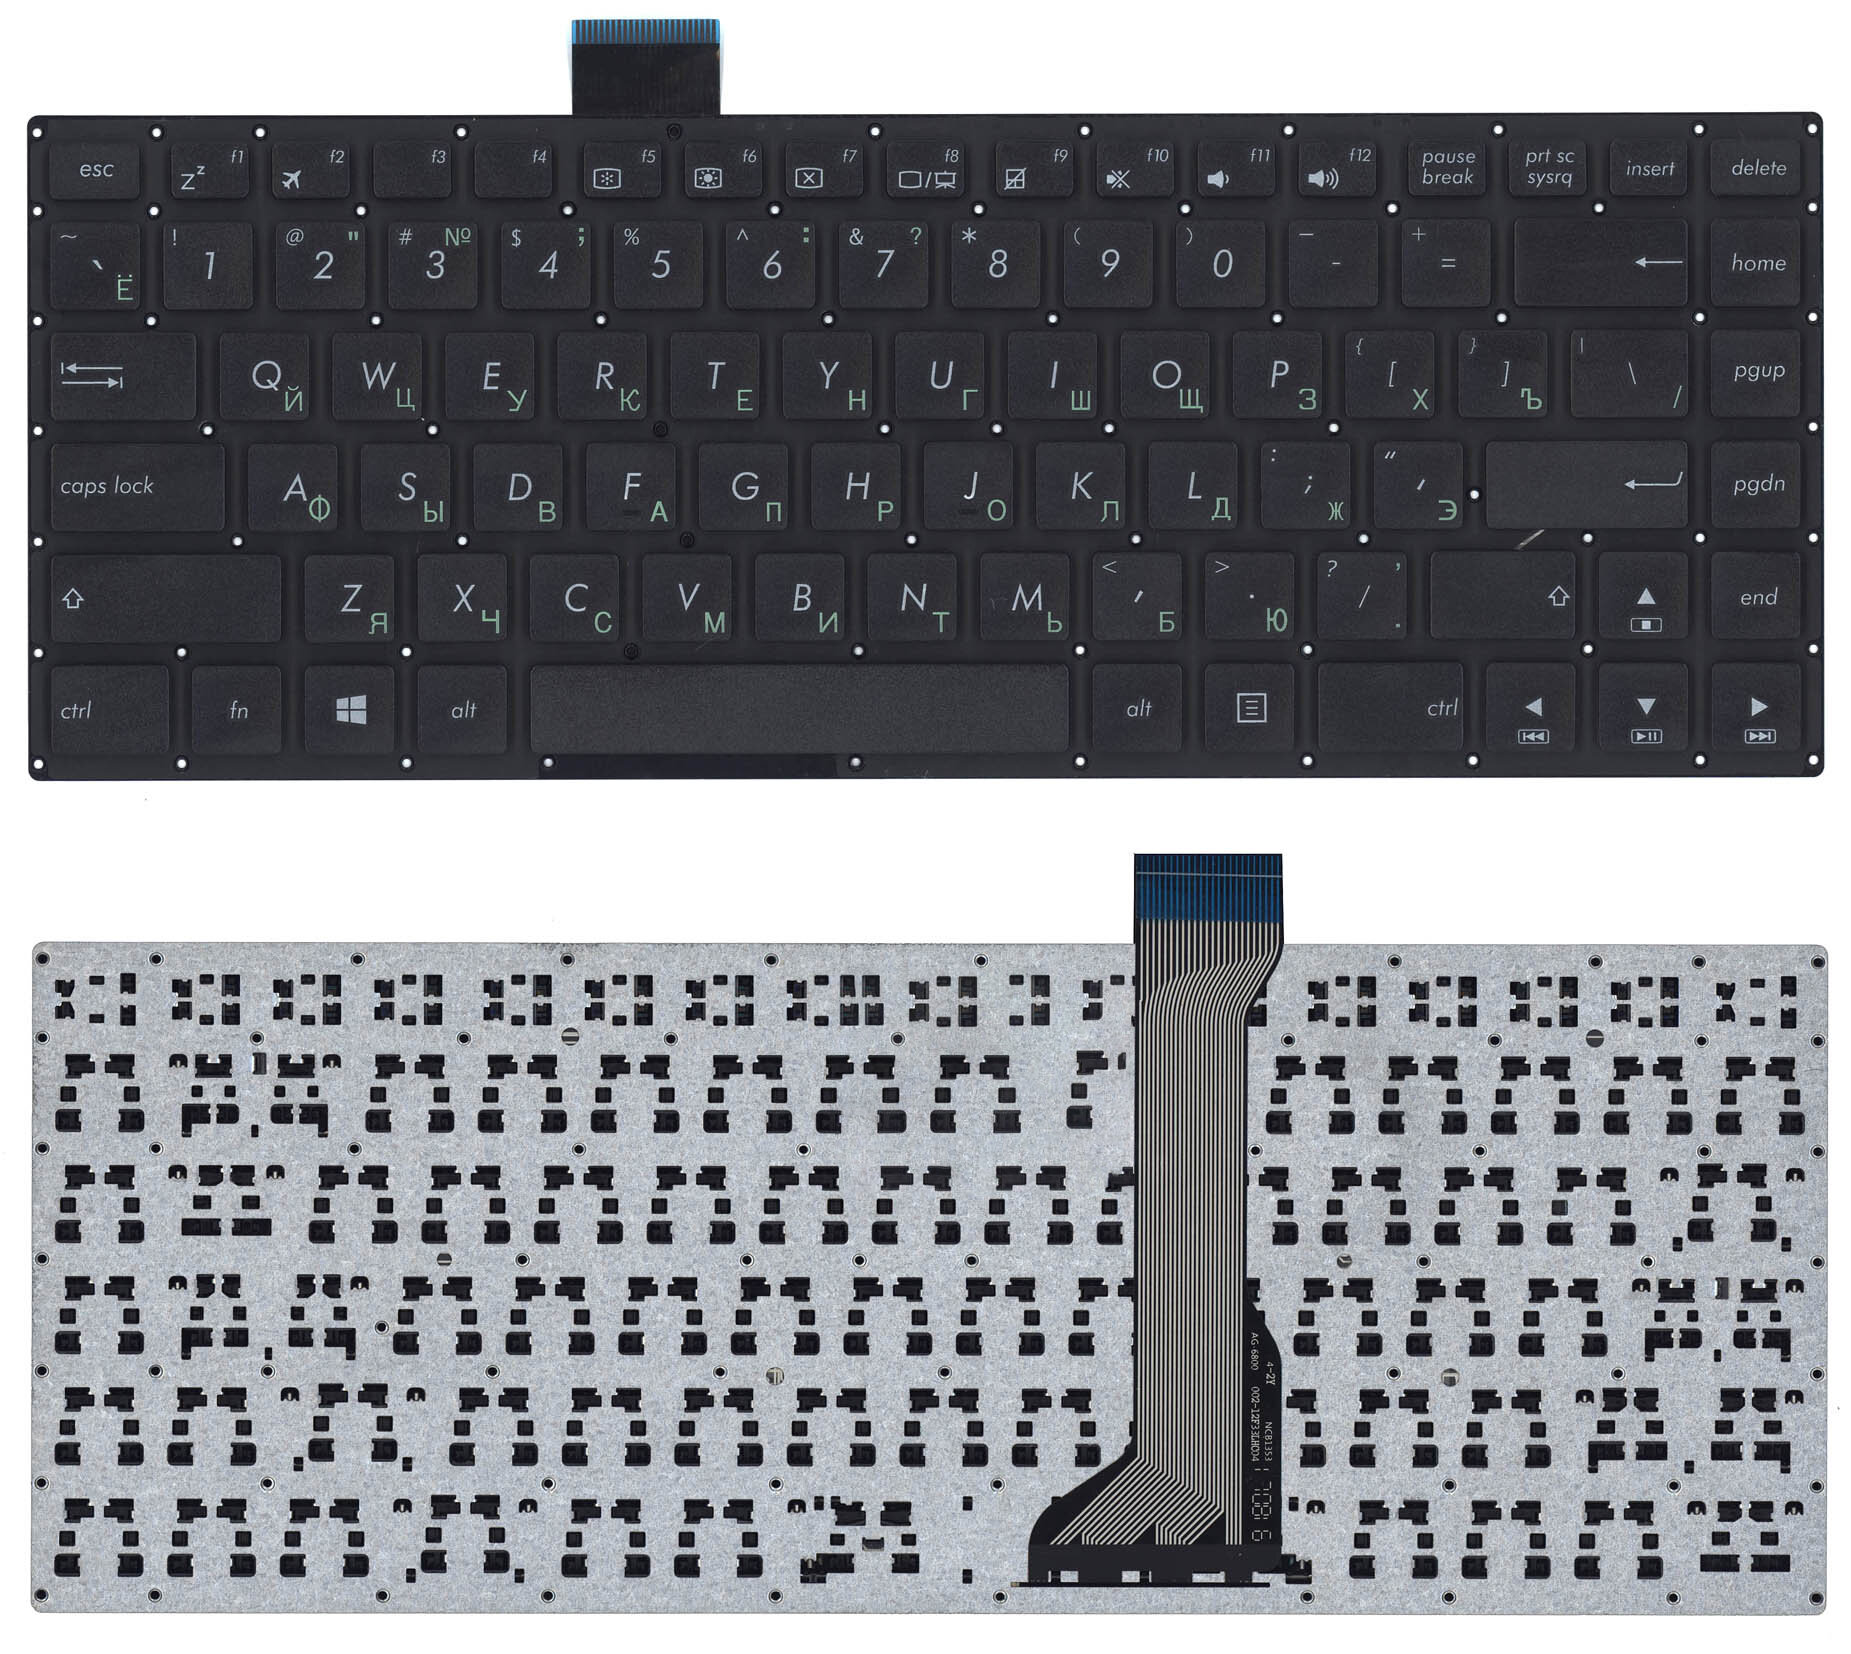 Клавиатура для ноутбука Asus E402 черная